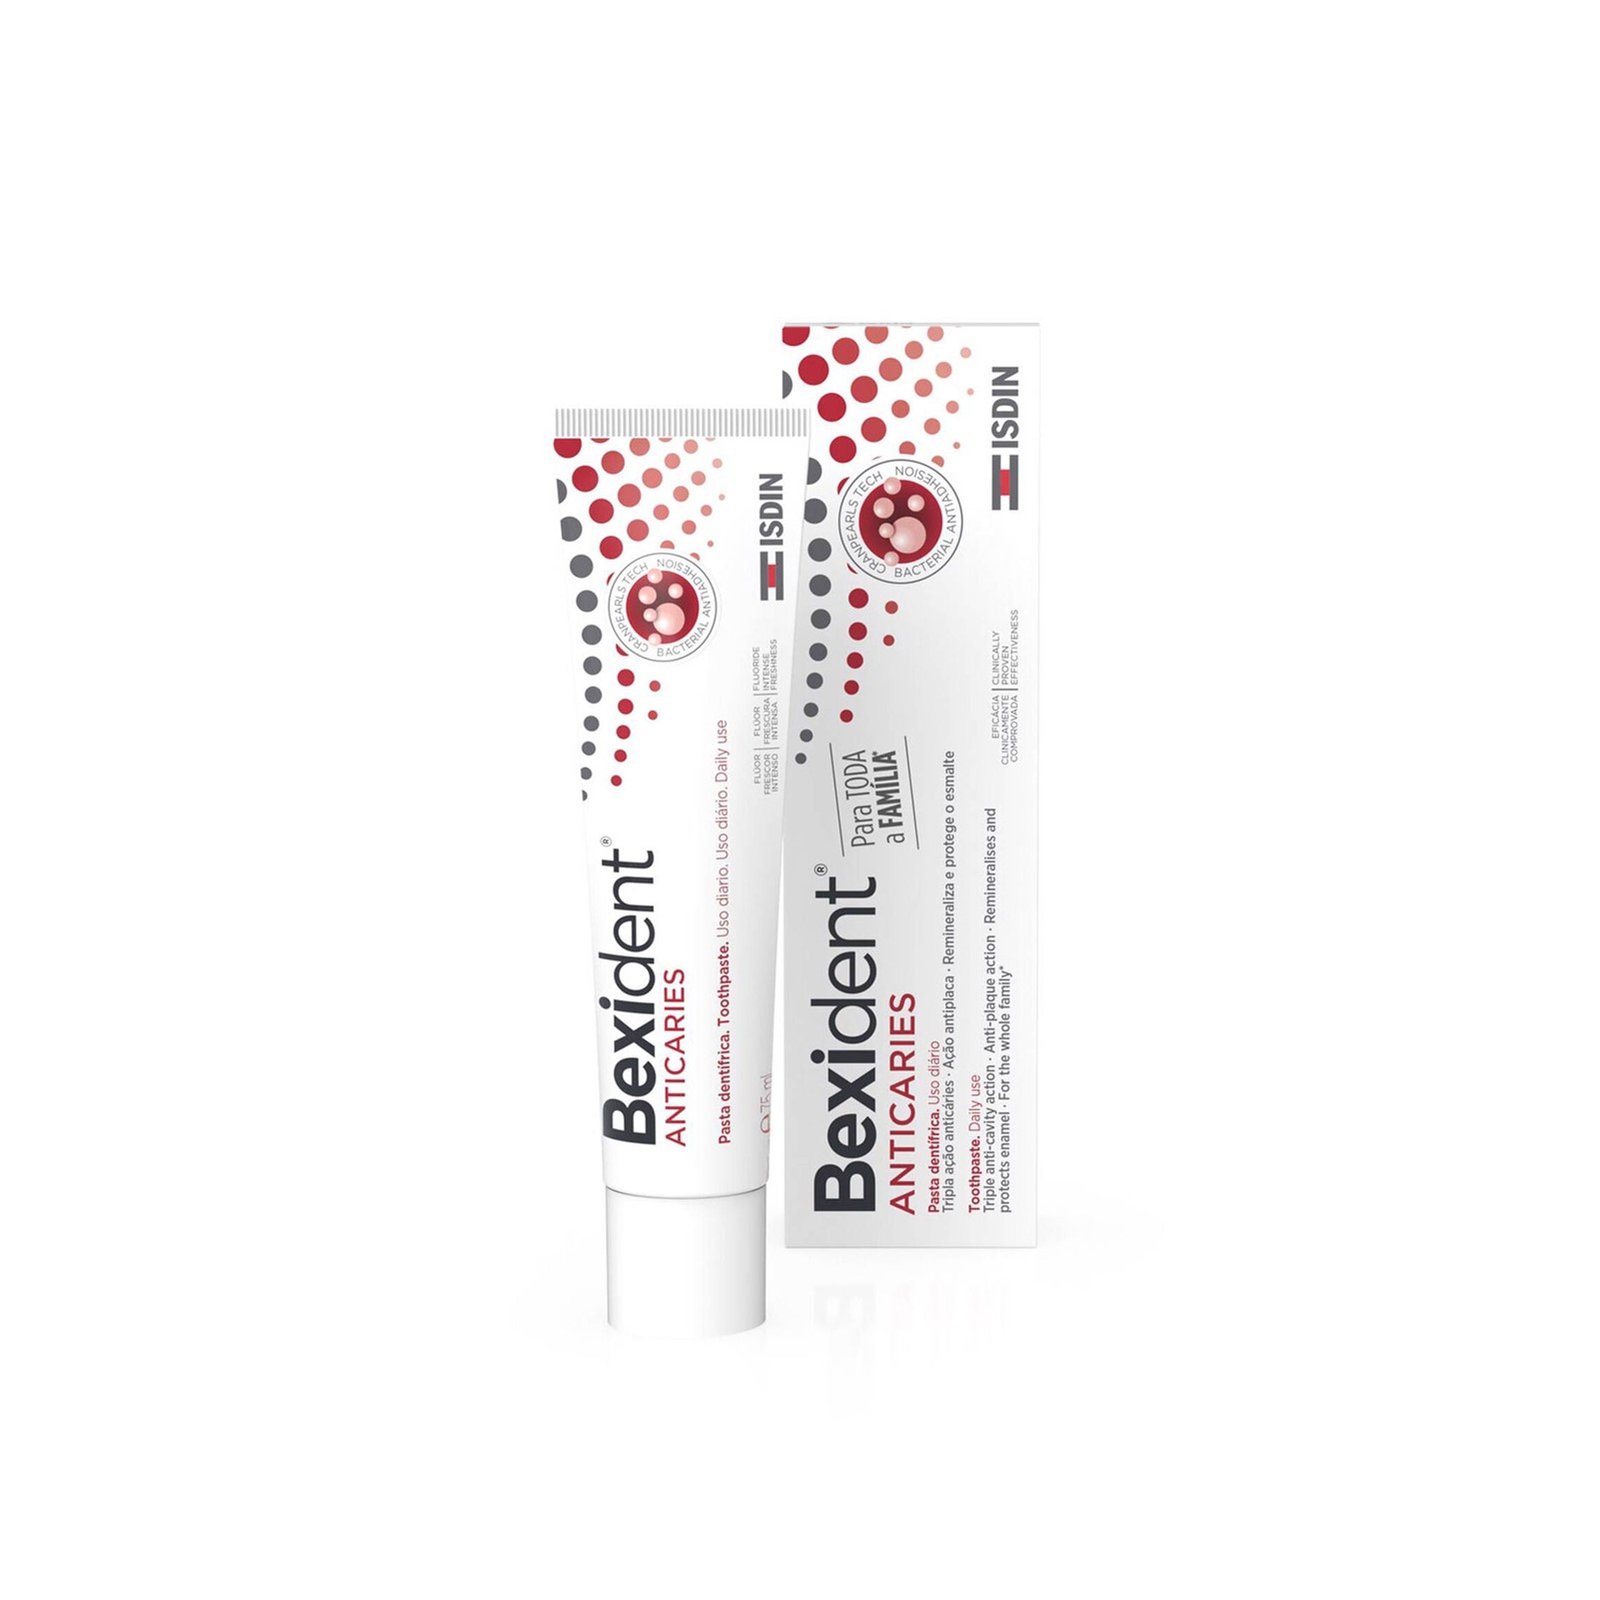 ISDIN Bexident Anticavity Toothpaste 75ml